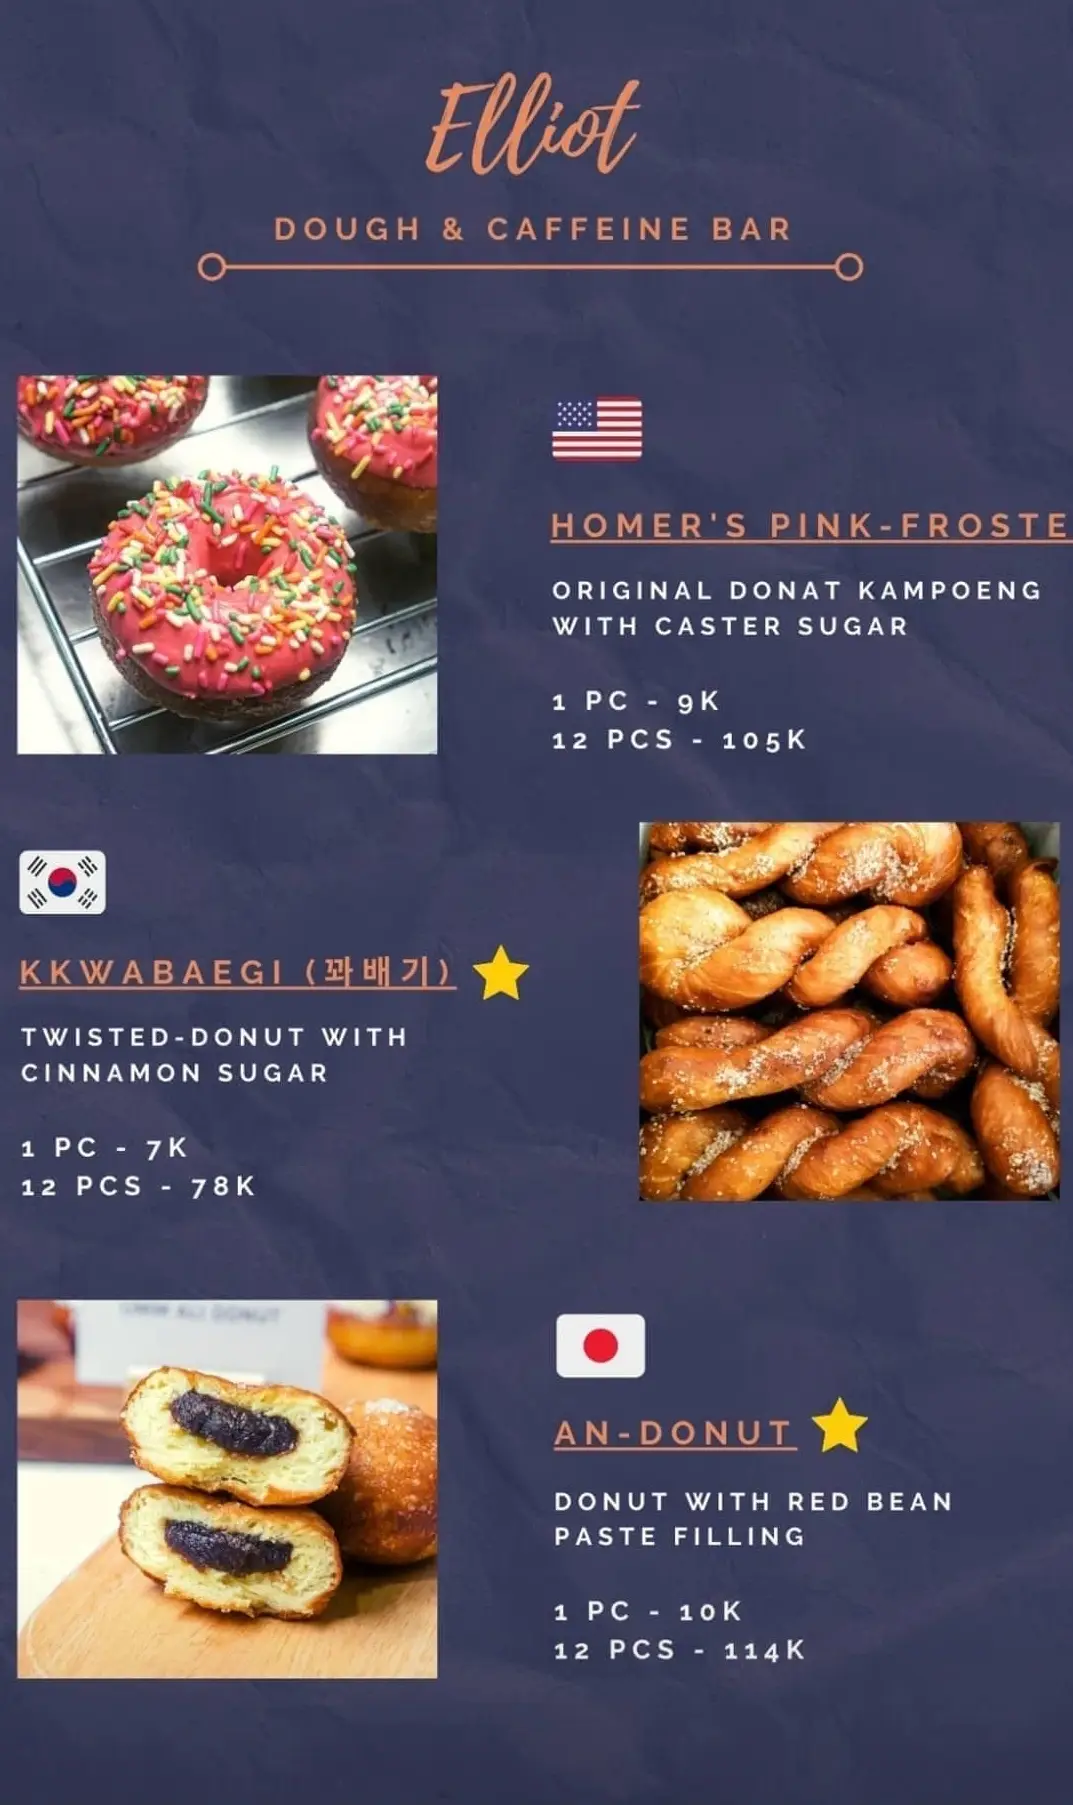 Kkwabaegi (Korean Twisted Donut)